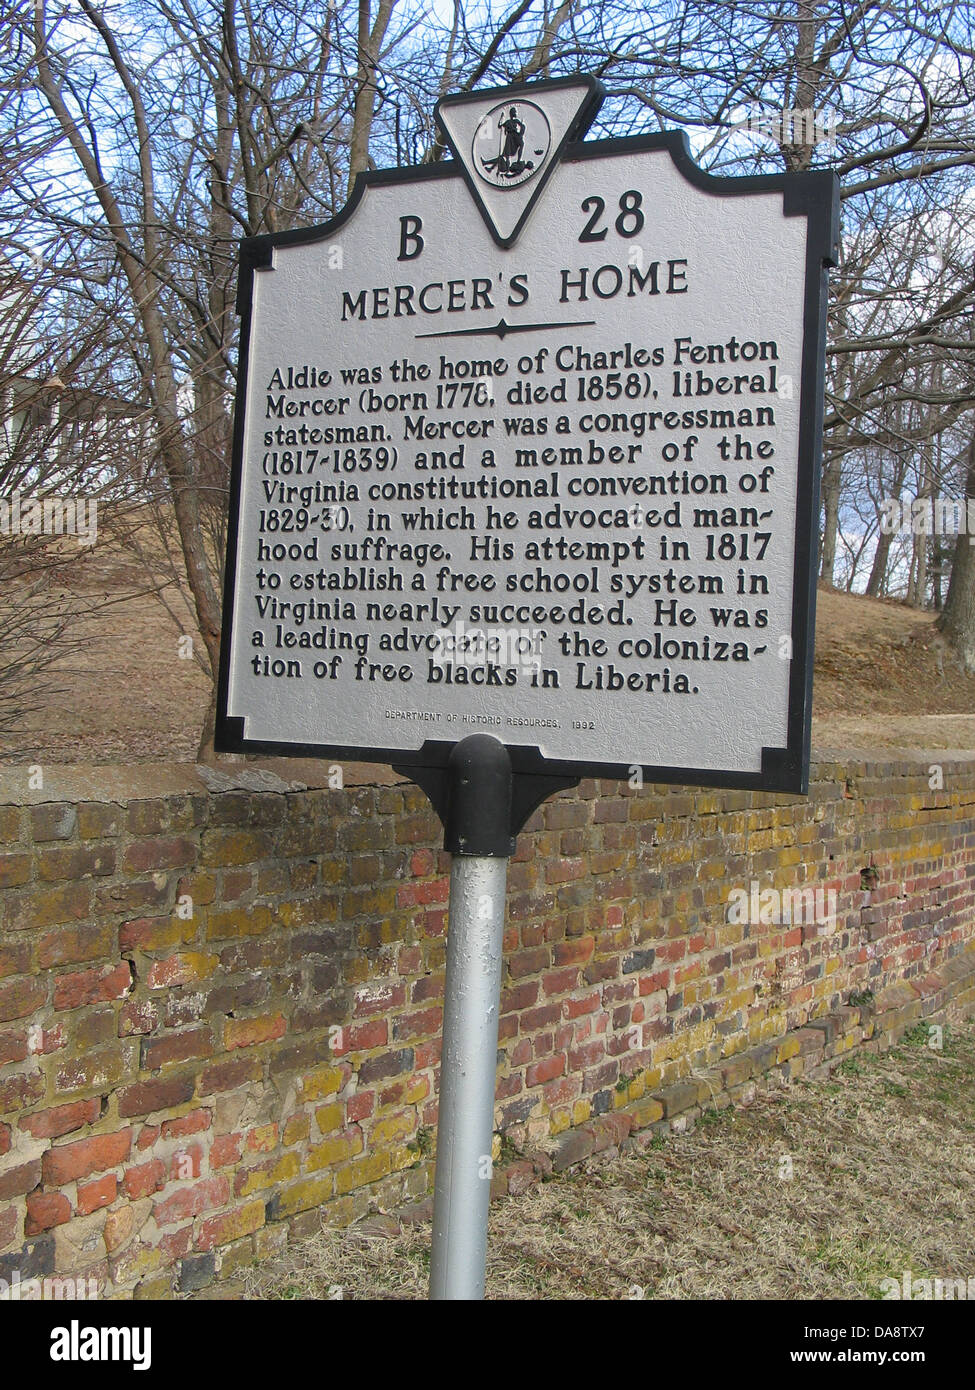 Il Mercer HOME Aldie fu la casa di Charles Fenton Mercer (nato 1778, morto 1858), statista liberale. Il Mercer era un membro del congresso (1817-1839) e un membro della Virginia convenzione costituzionale del 1829-30, in cui ha sostenuto la virilità suffragio. Il suo tentativo nel 1817 per istituire una libera scuola di sistema in Virginia quasi riuscito. Egli è stato uno dei principali sostenitori della colonizzazione della libera i neri in Liberia. Dipartimento di risorse storiche, 1992. Foto Stock